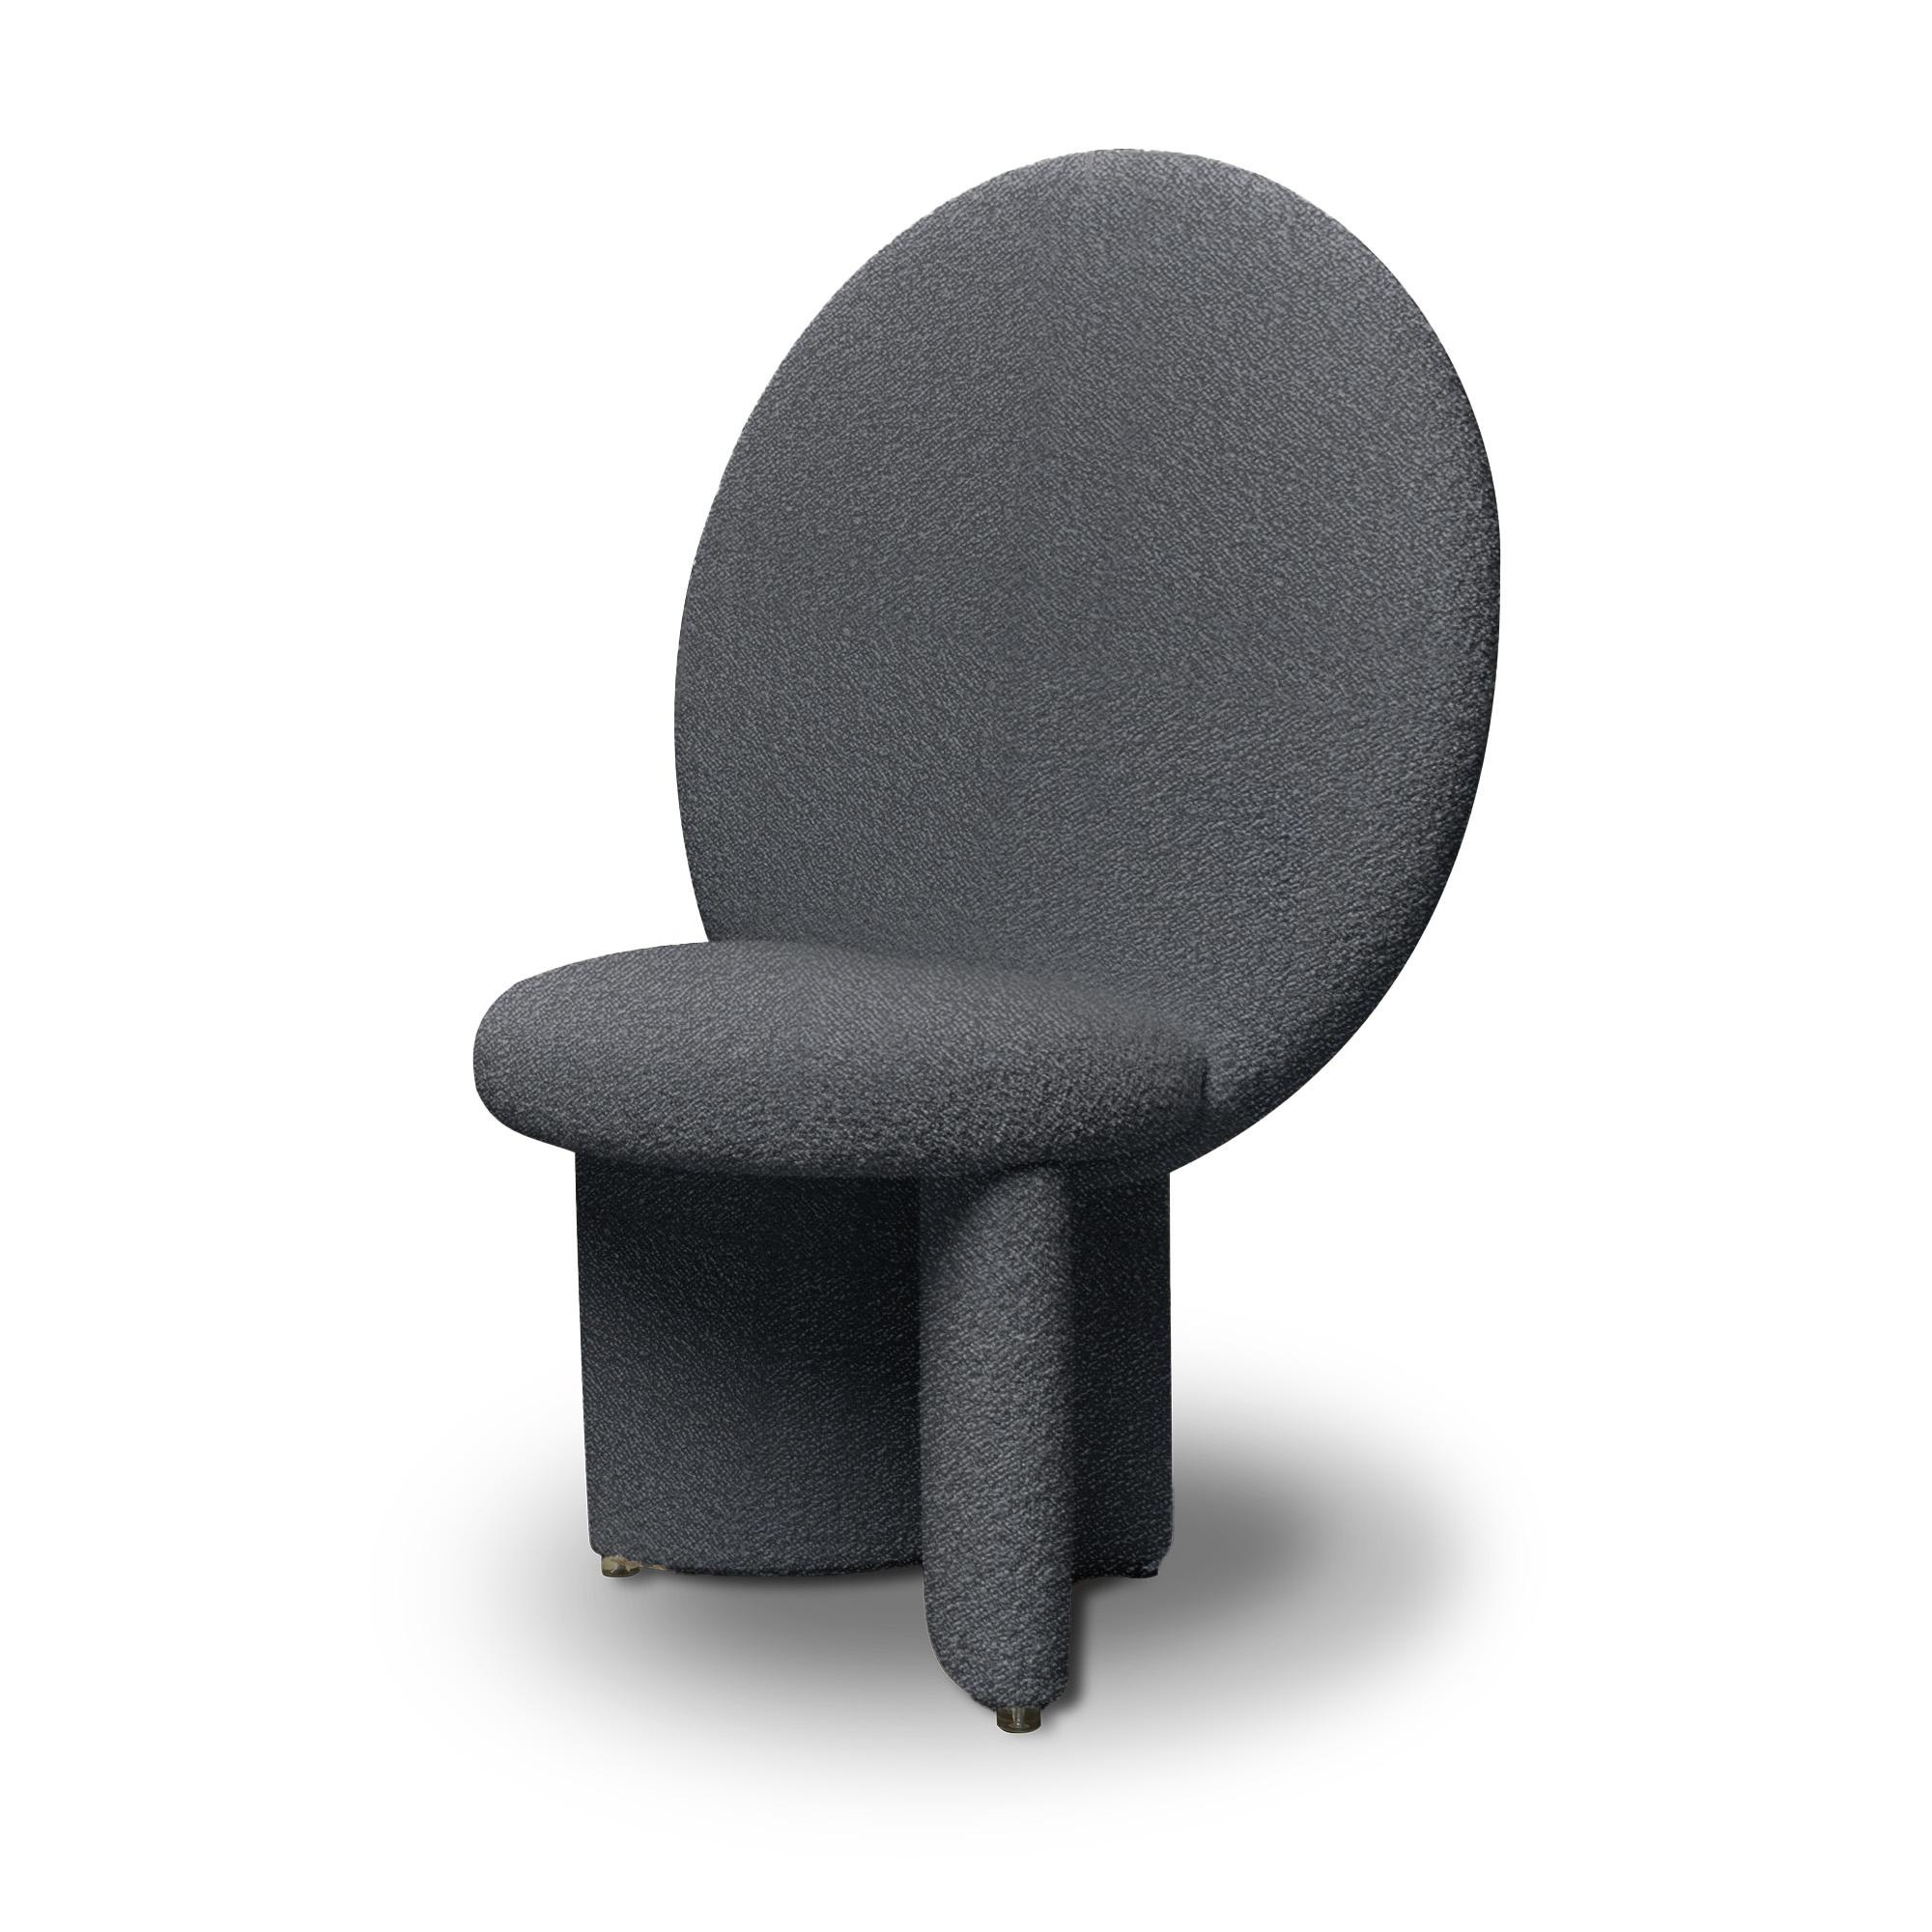 Der Sessel Afternoon wirkt majestätisch wie ein Thron, mit einer riesigen runden Rückenlehne, die sich nach oben streckt und deren Beine sich in einem Winkel mit dem Sitz verbinden. Der Stuhl ist komplett mit weichem, strukturiertem Bouclé-Stoff